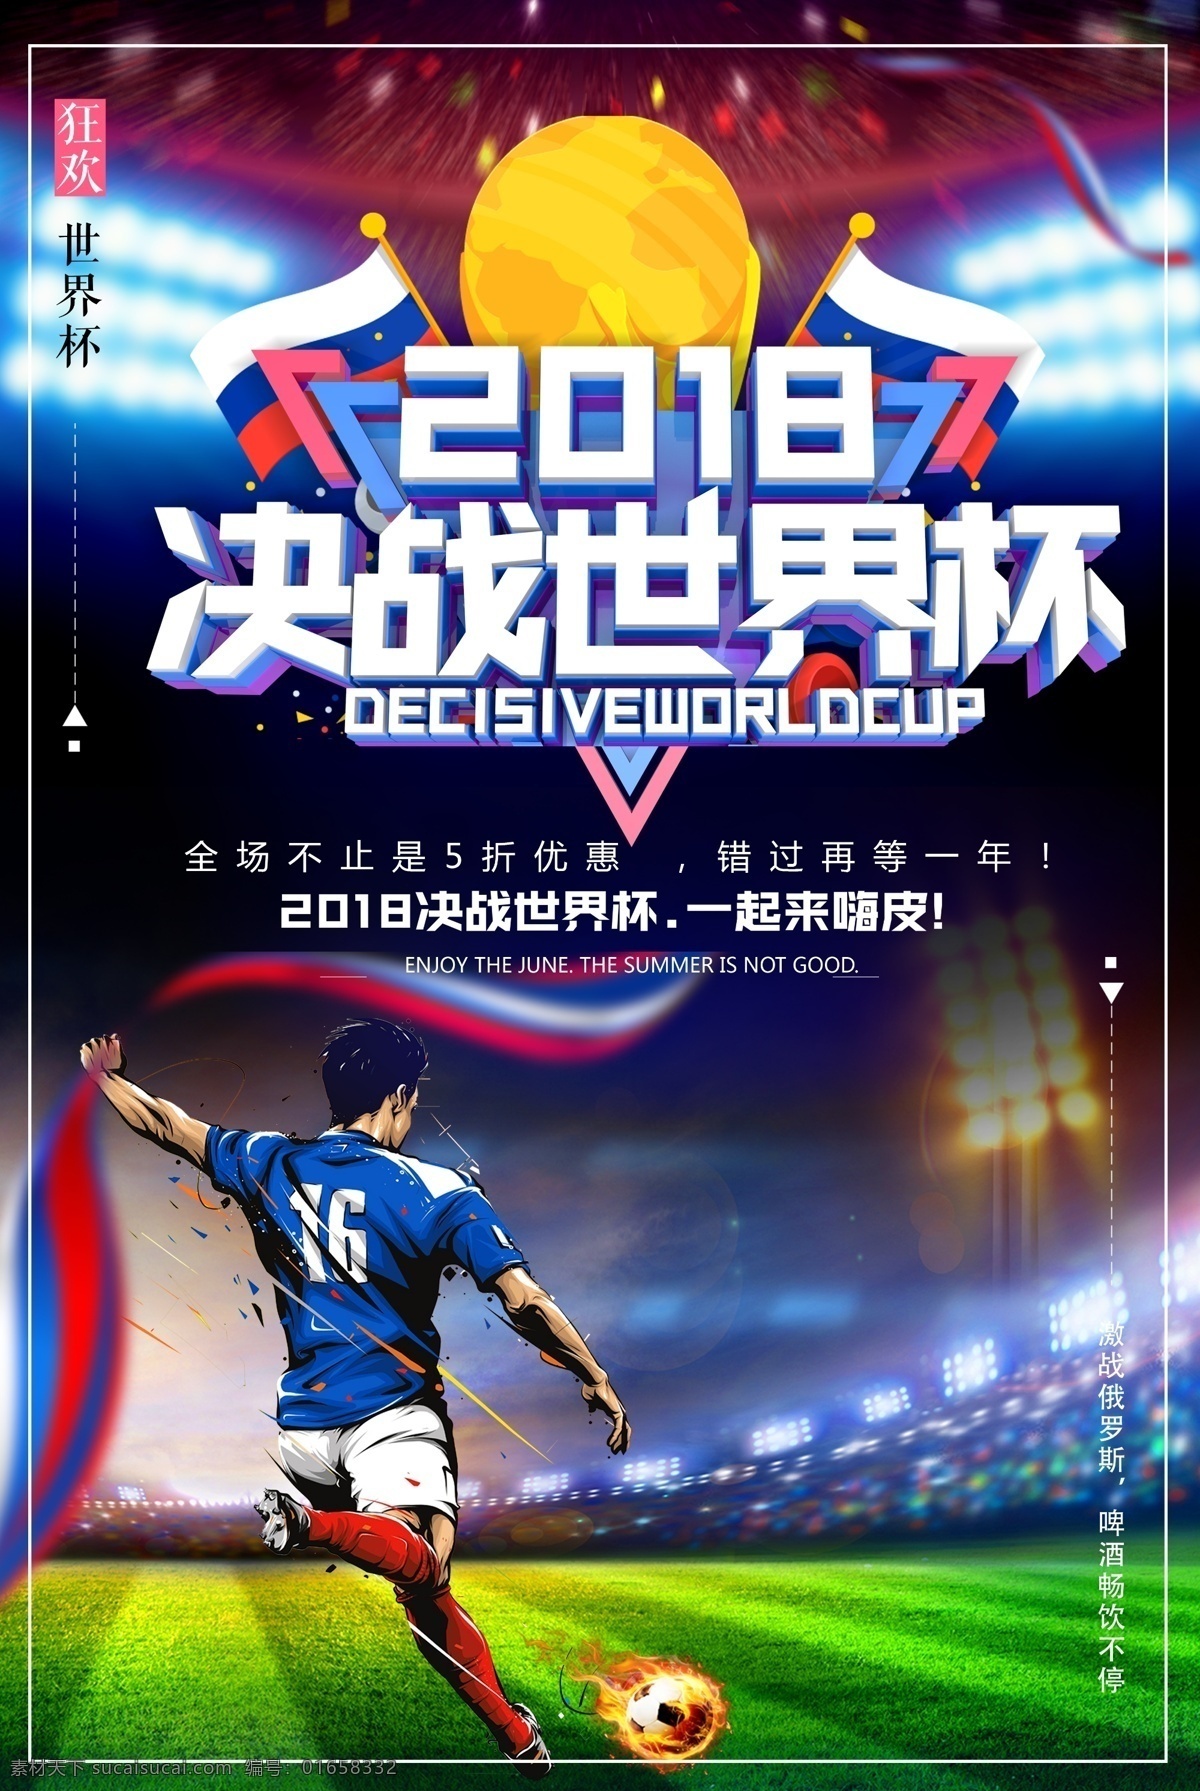 2018 决战 俄罗斯 世界杯 足球比赛 宣传海报 足球海报 体育运动 世界杯海报 2018比赛 比赛 世界杯比赛 比赛海报 体育海报 运动比赛 体育模板 世界杯足球 平面素材